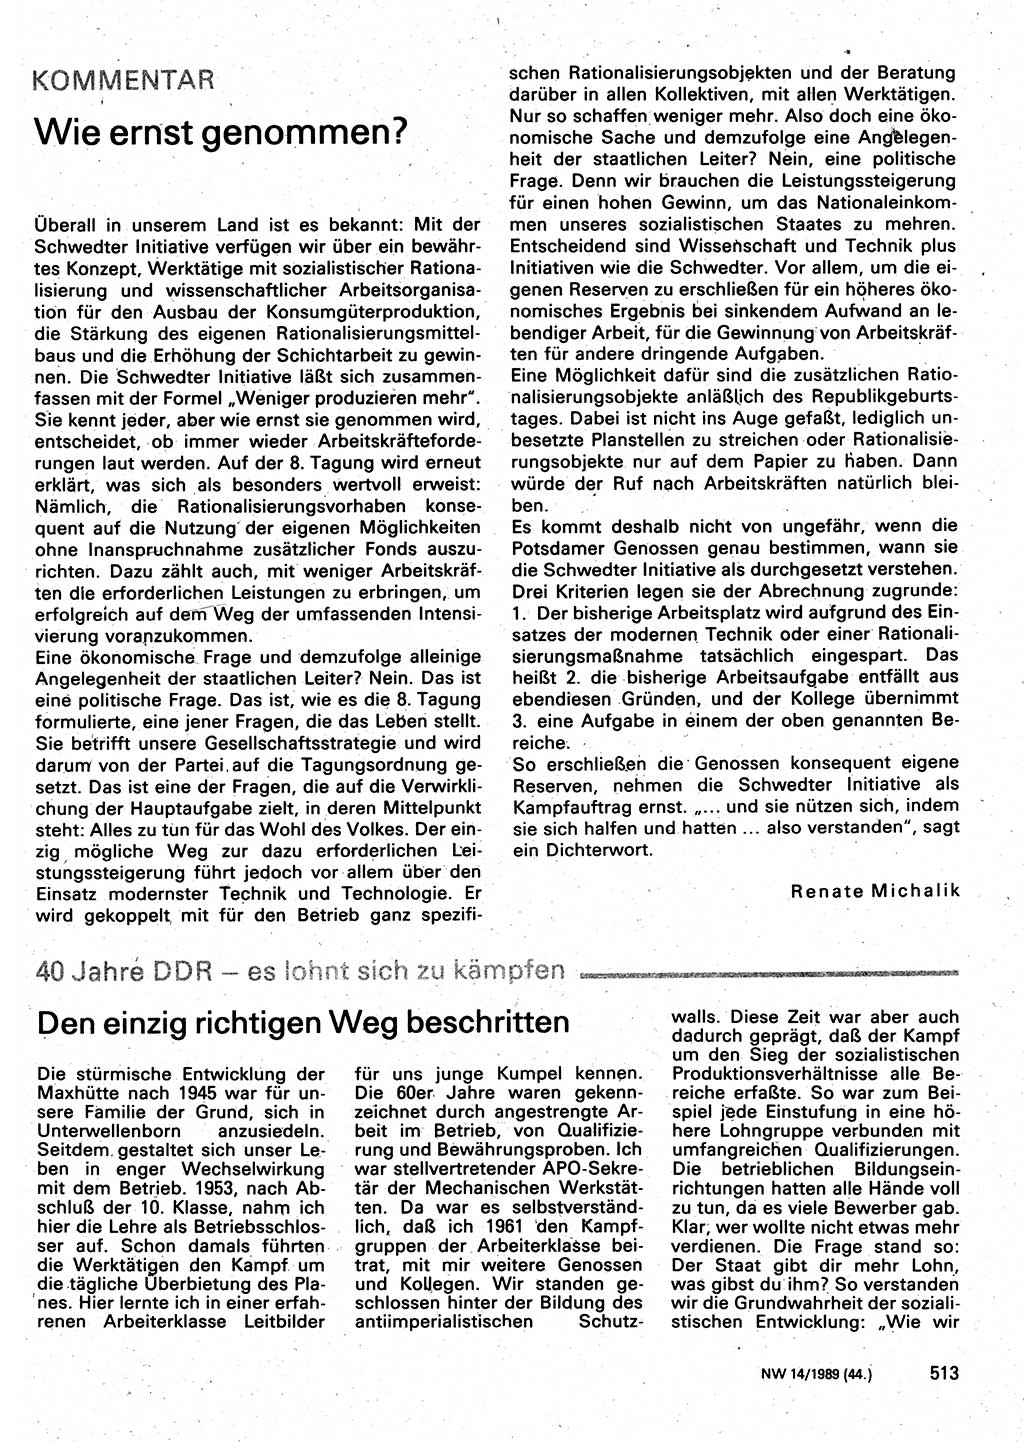 Neuer Weg (NW), Organ des Zentralkomitees (ZK) der SED (Sozialistische Einheitspartei Deutschlands) für Fragen des Parteilebens, 44. Jahrgang [Deutsche Demokratische Republik (DDR)] 1989, Seite 513 (NW ZK SED DDR 1989, S. 513)